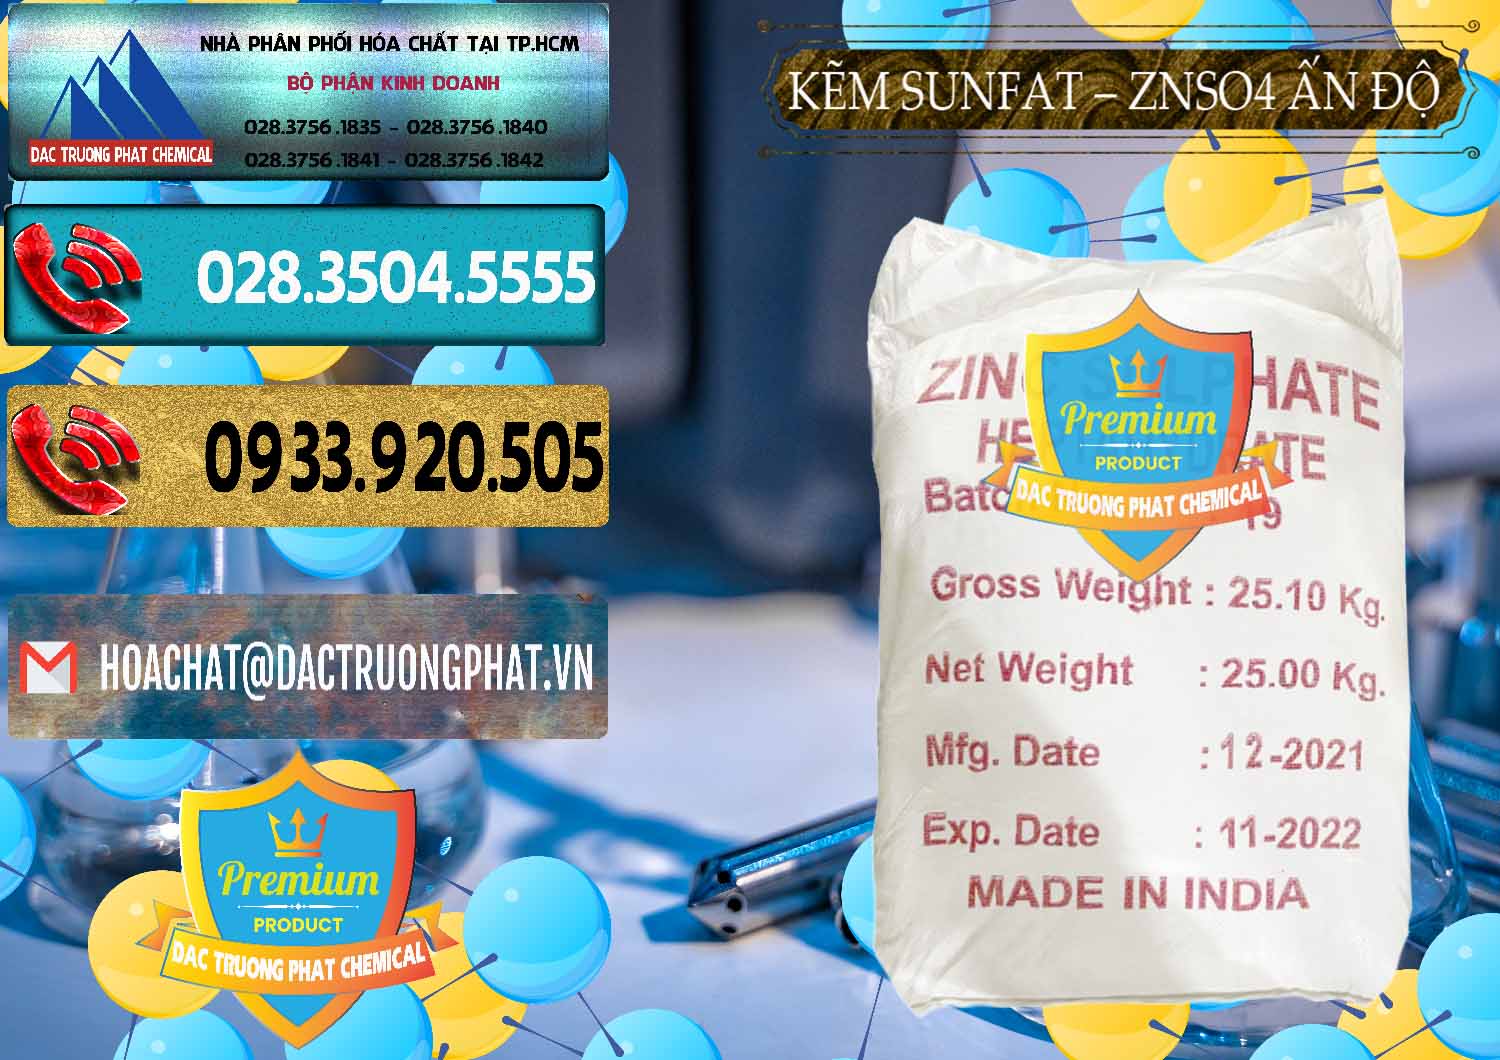 Cty bán và phân phối Kẽm Sunfat – ZNSO4.7H2O Ấn Độ India - 0417 - Đơn vị chuyên phân phối & cung ứng hóa chất tại TP.HCM - hoachatdetnhuom.com